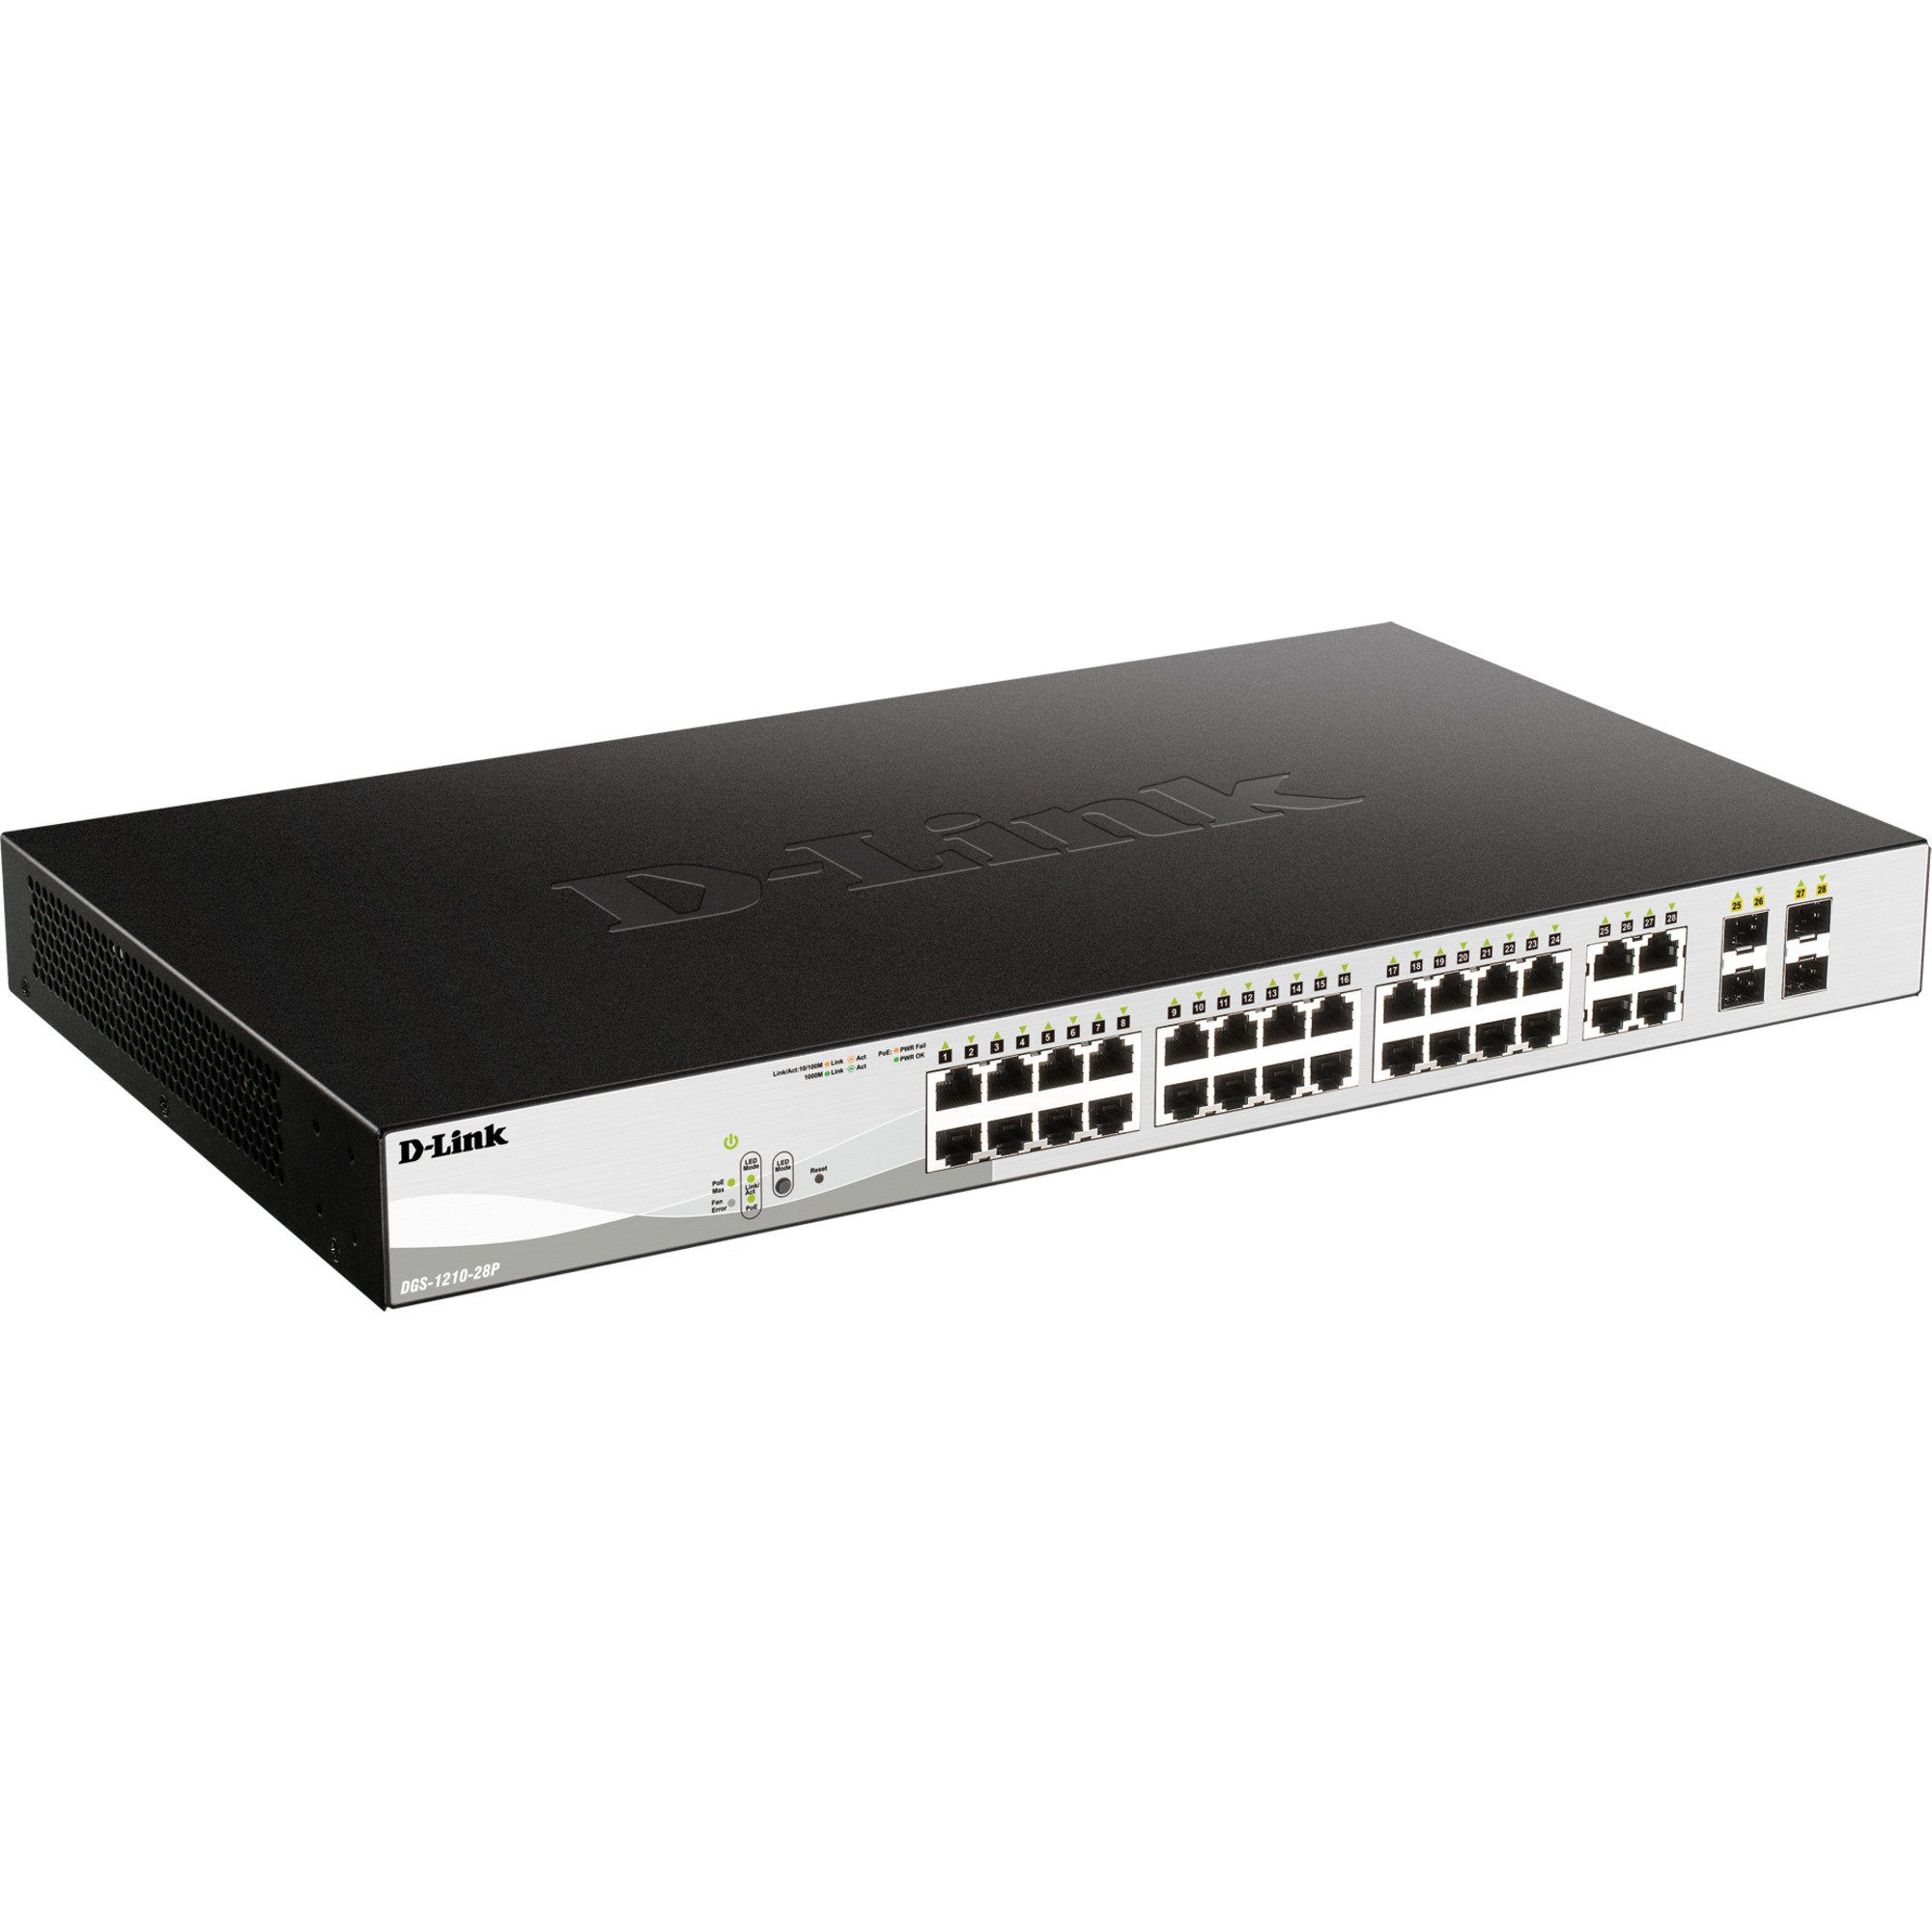 DGS-1210-28P/E, Netzwerk-Switch Switch D-Link D-Link